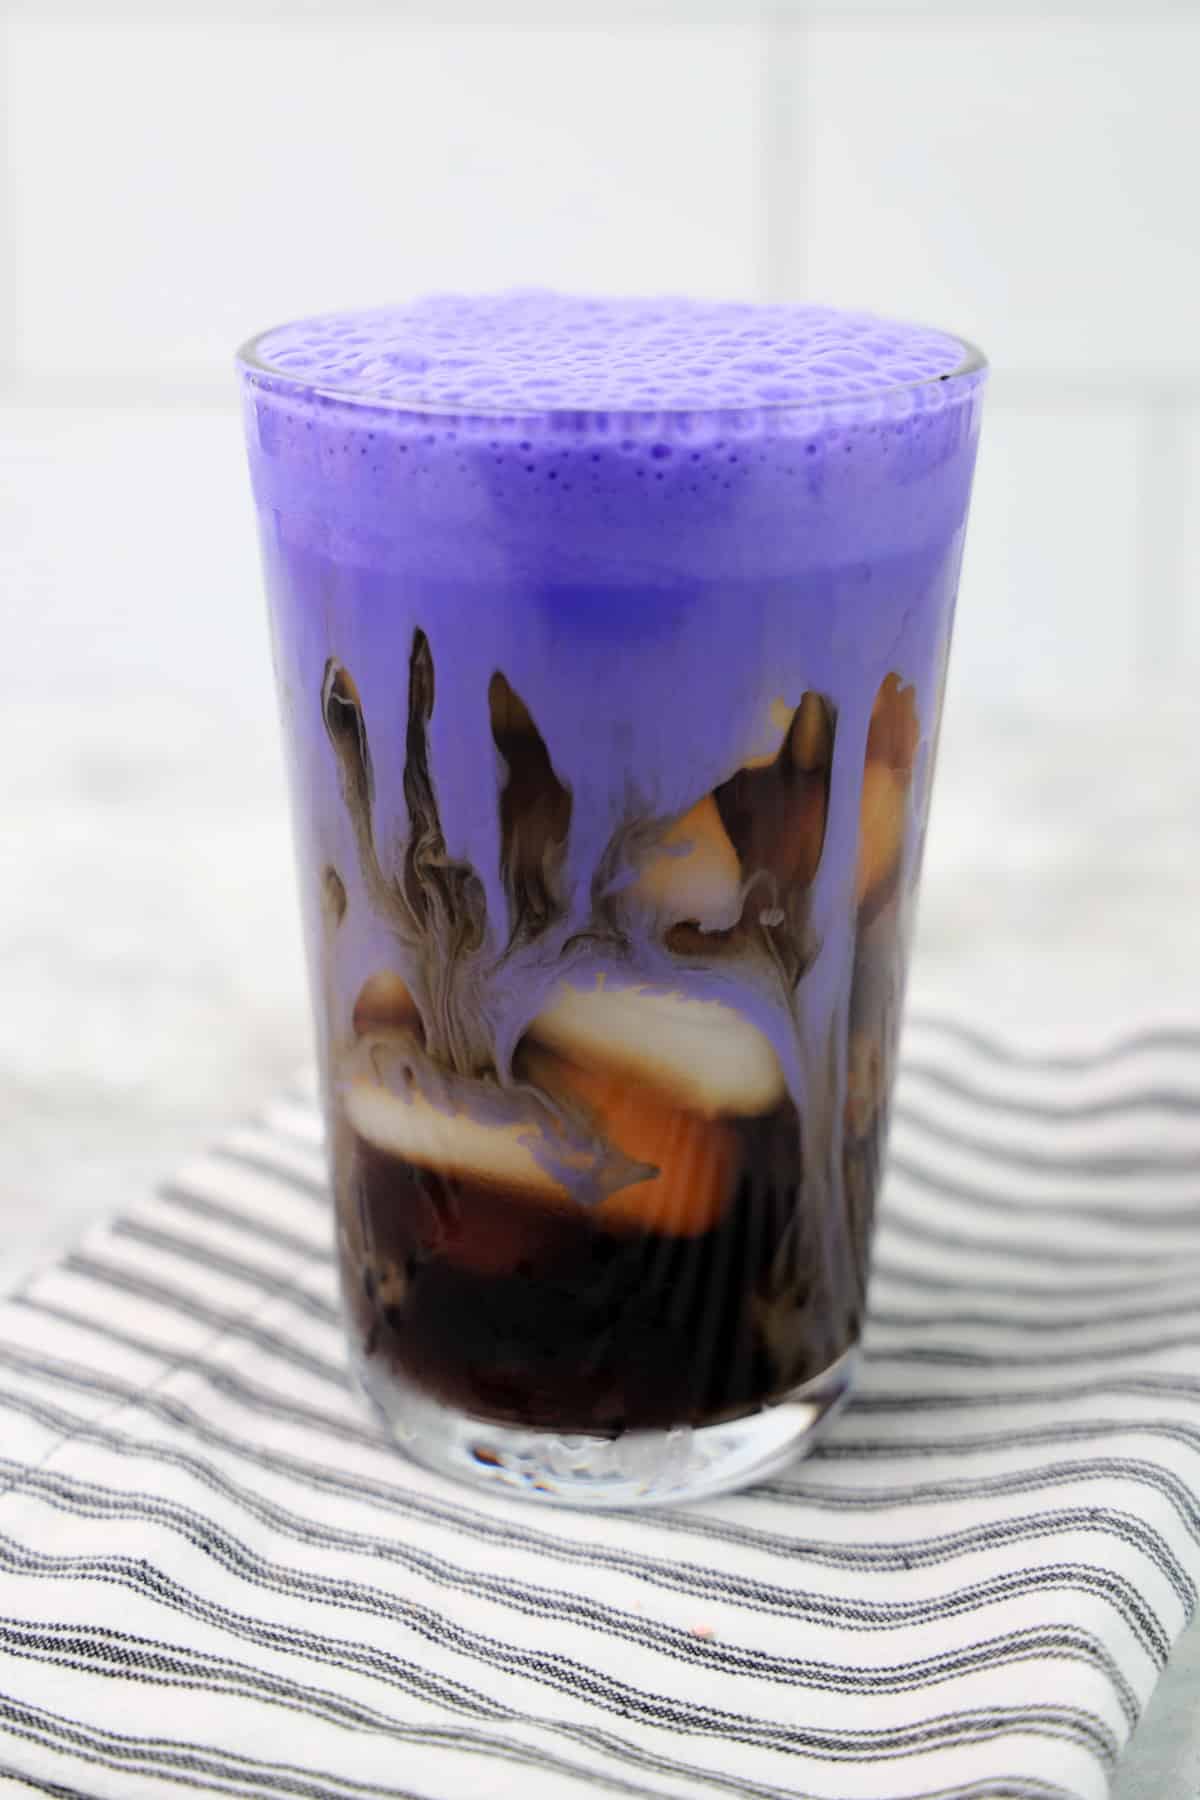 Pour purple cream over coffee